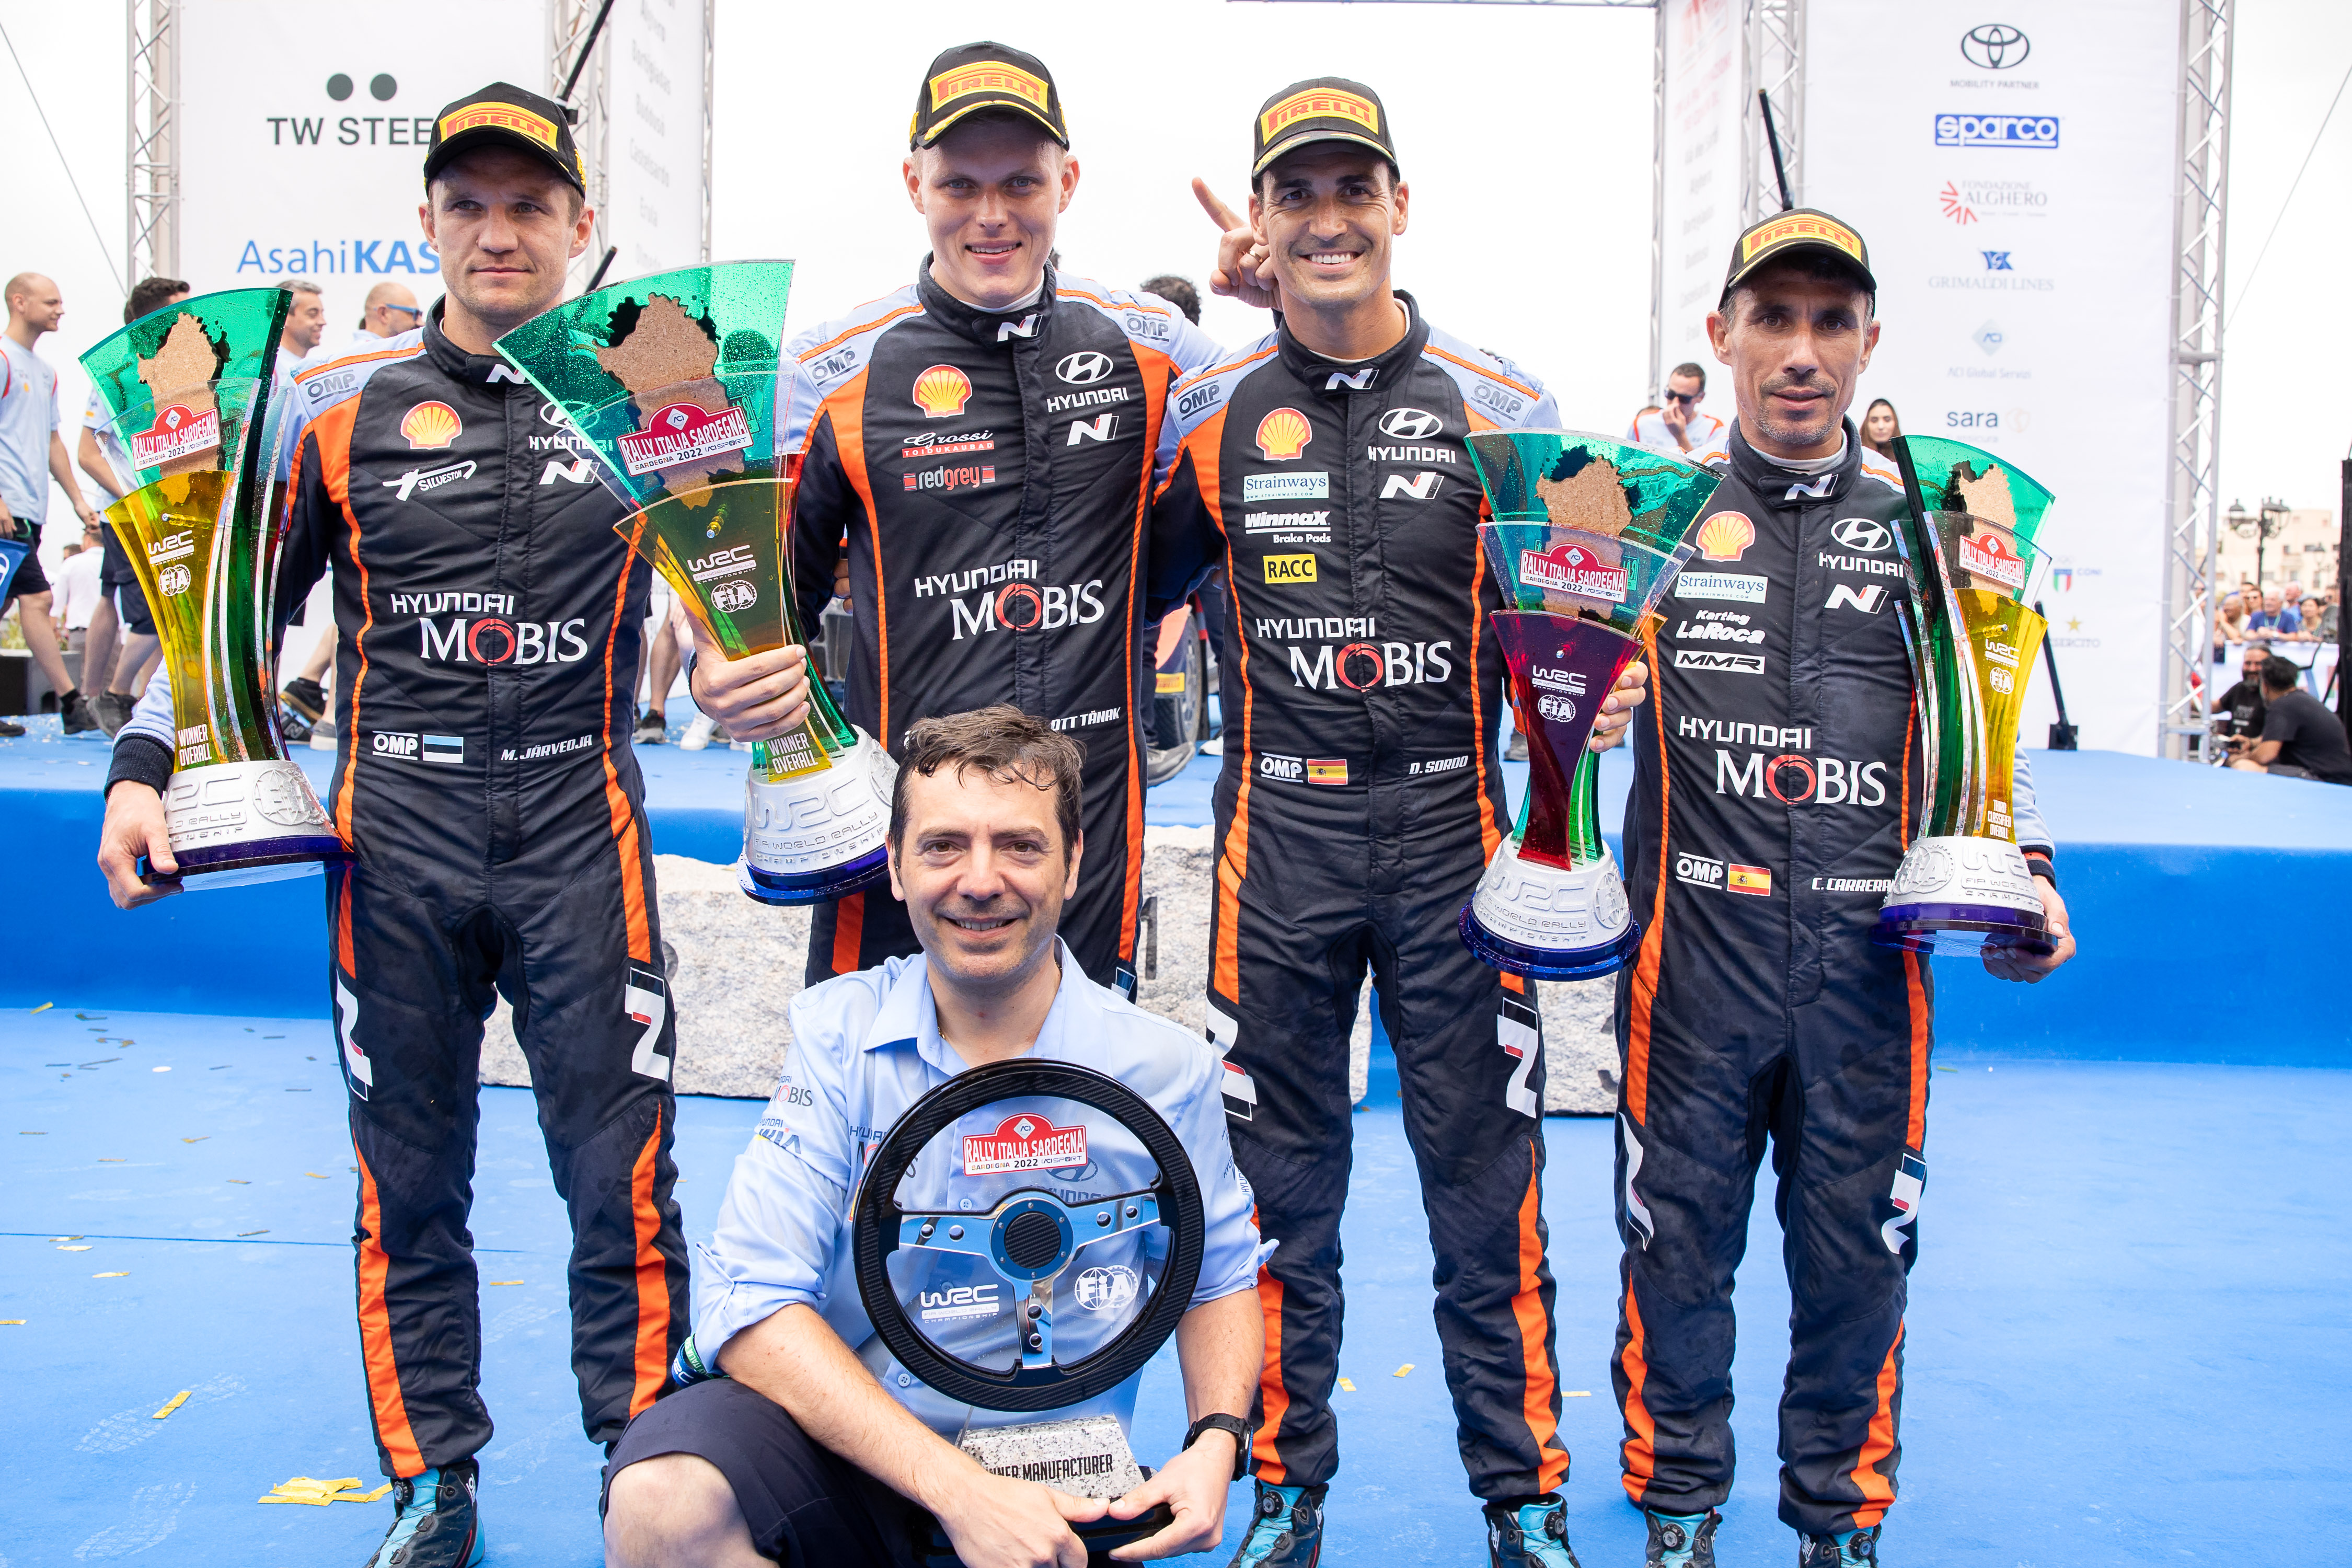 이탈리아에서 열린 2022 WRC 5차 대회에서 수상자들이 기념촬영 하고 있는 모습. (뒷줄 왼쪽부터 우승을 차지한 현대 월드랠리팀 보조 드라이버 마틴 야르베오야(Martin Järveoja), 드라이버 오트 타낙(Ott Tänak), 3위를 차지한 드라이버 다니 소르도(Dani Sordo), 보조 드라이버 칸디도 카레라(Candido Carrera)) 현대차 제공